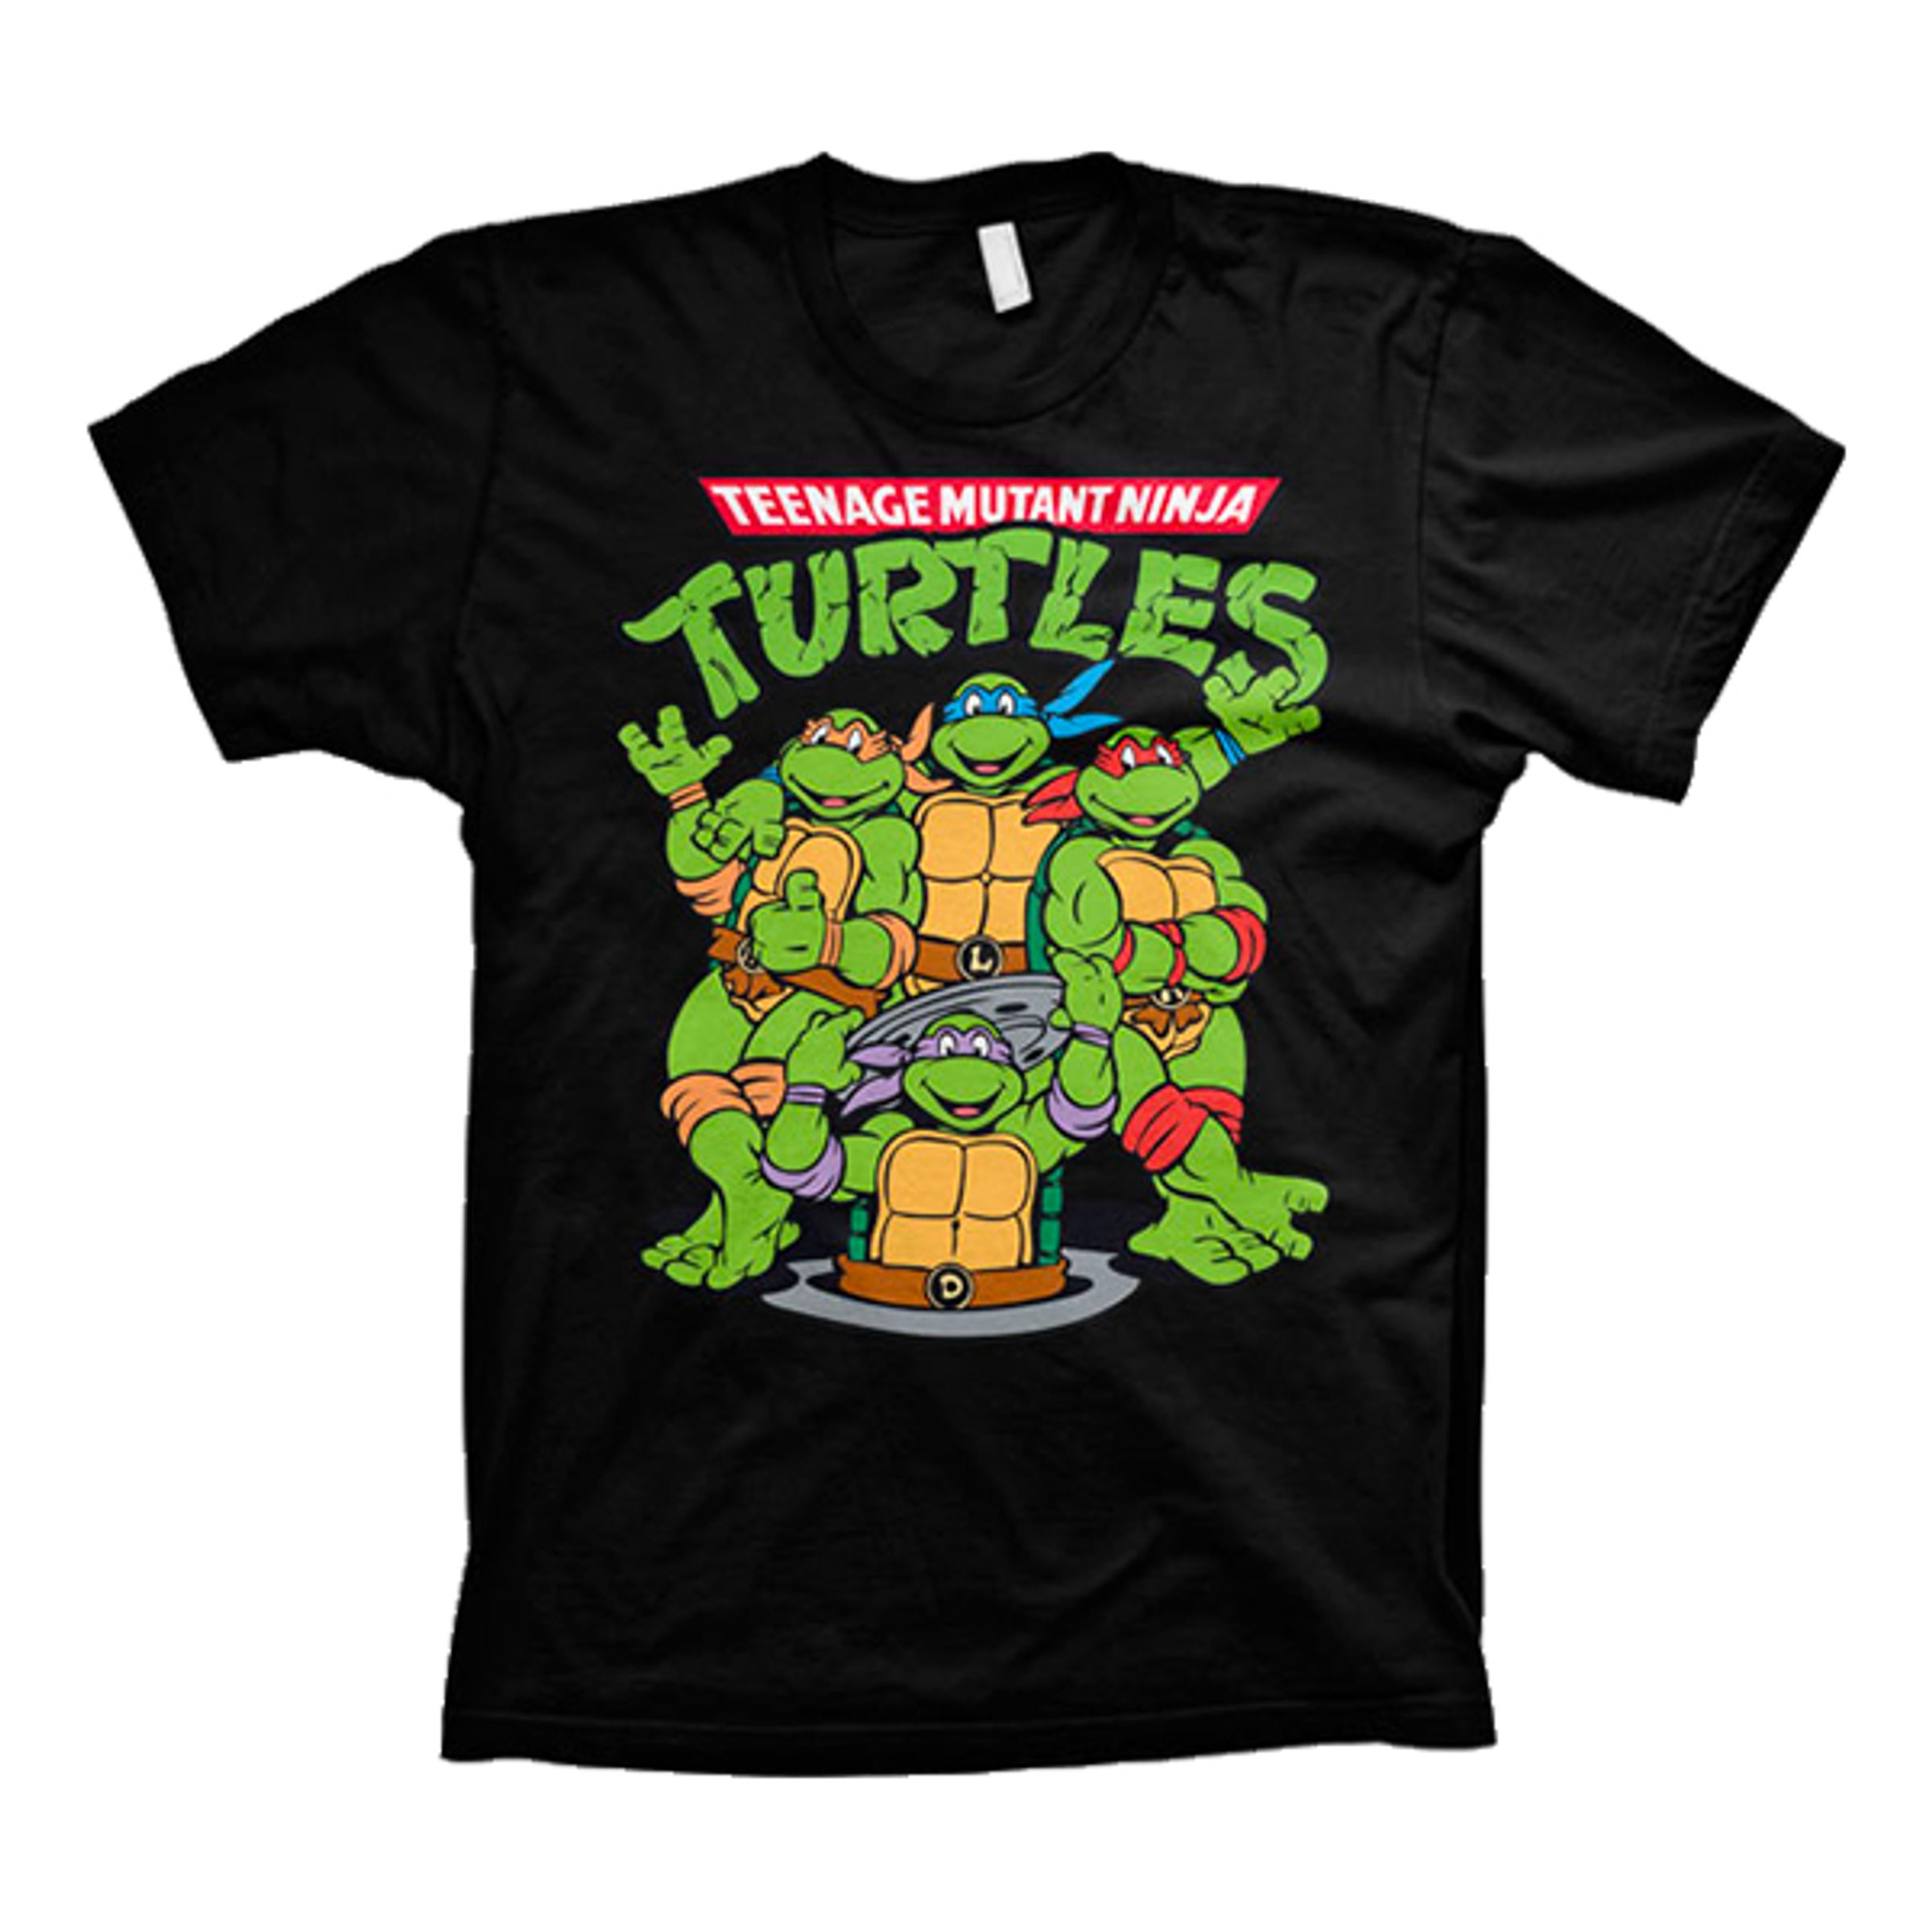 Teenage Mutant Ninja Turtles T-shirt - Large